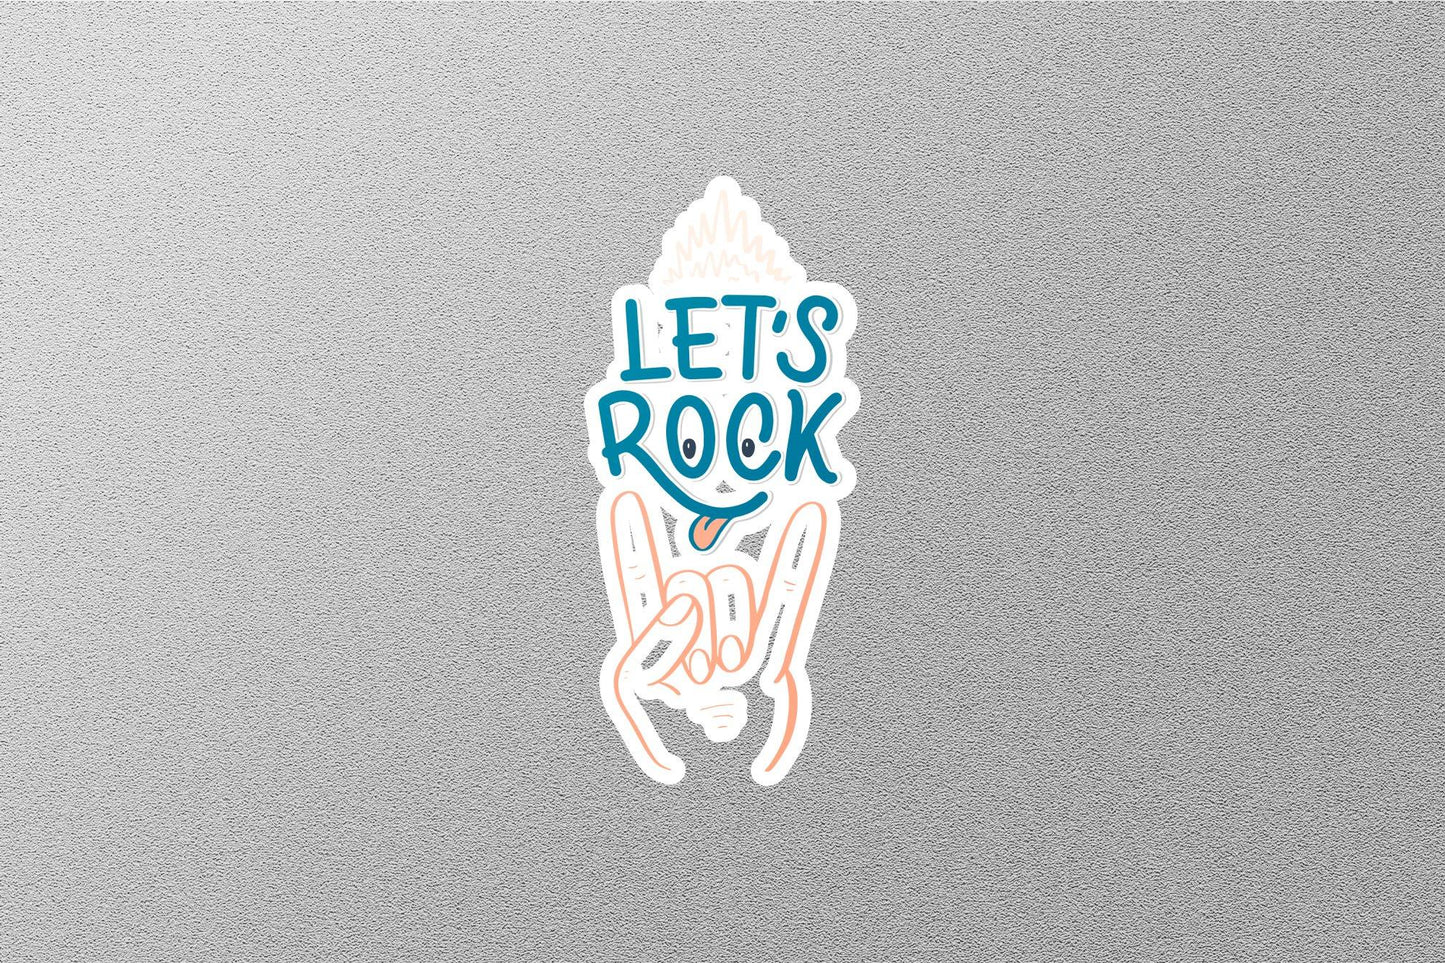 Let's Rock Sticker